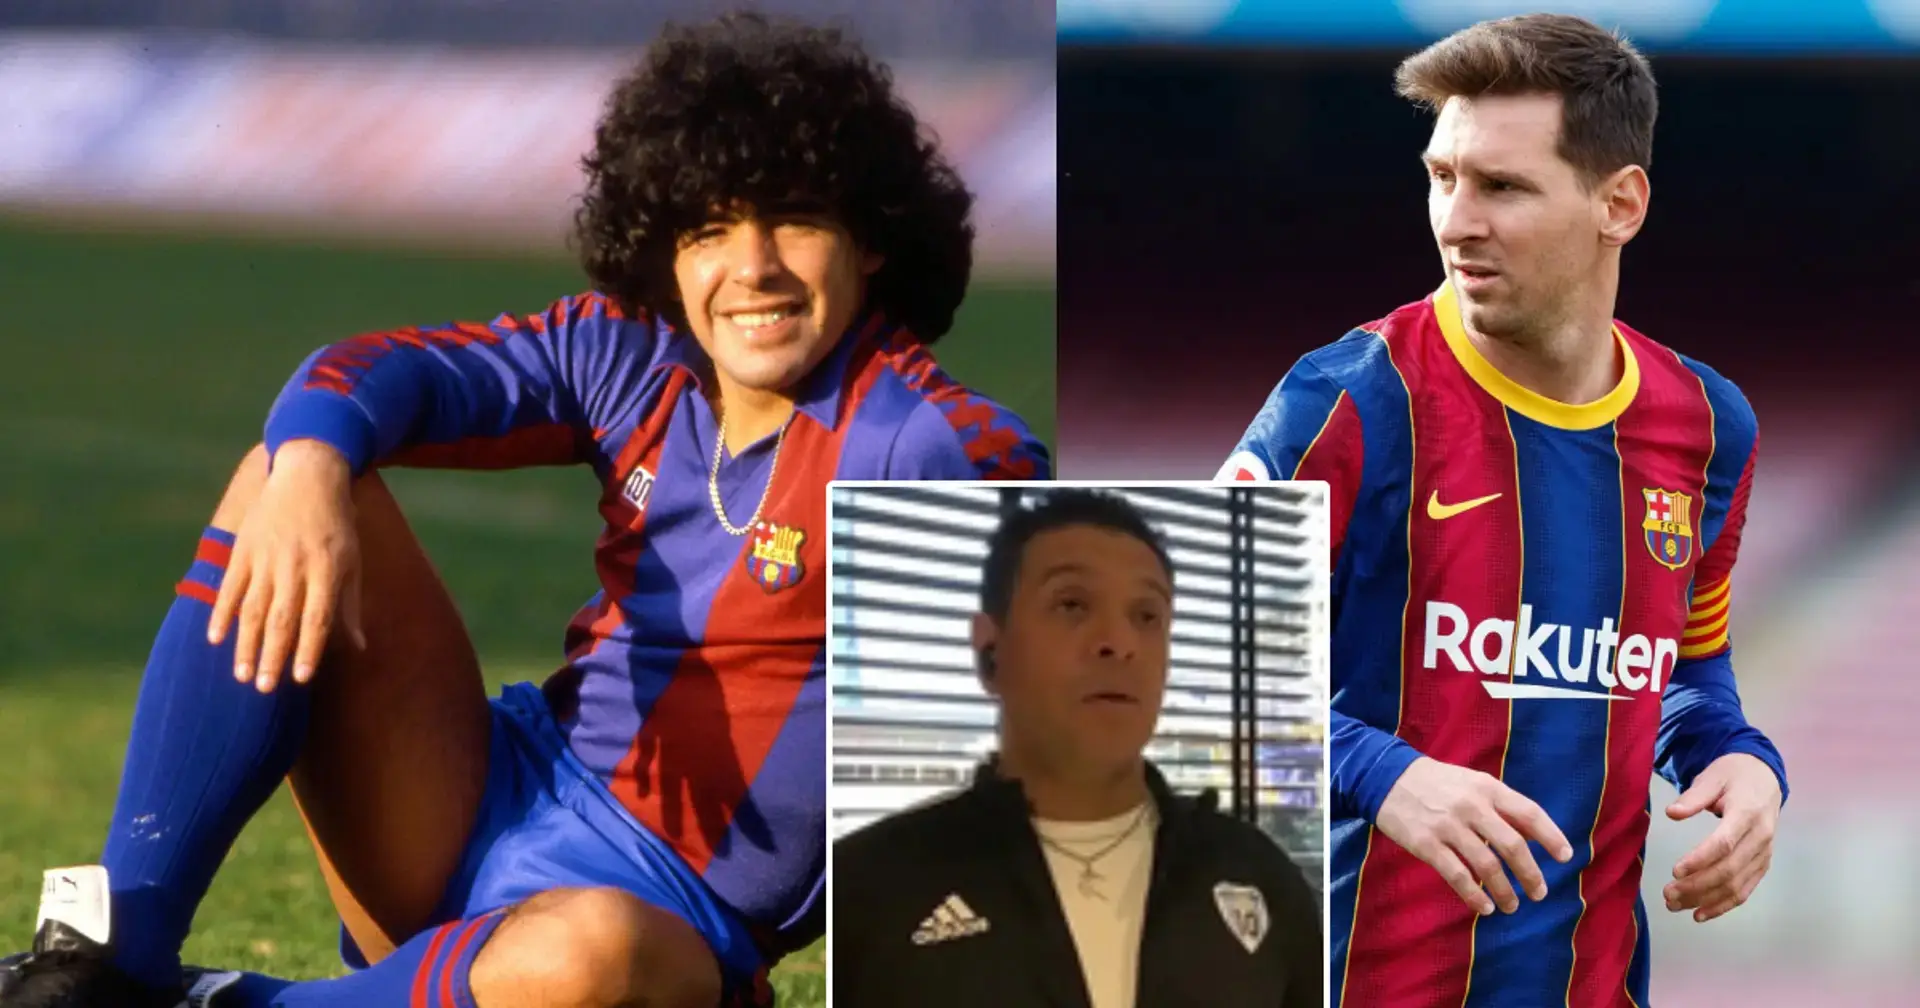 Der Bruder von Maradona erklärt den Unterschied zwischen Diego und Leo Messi